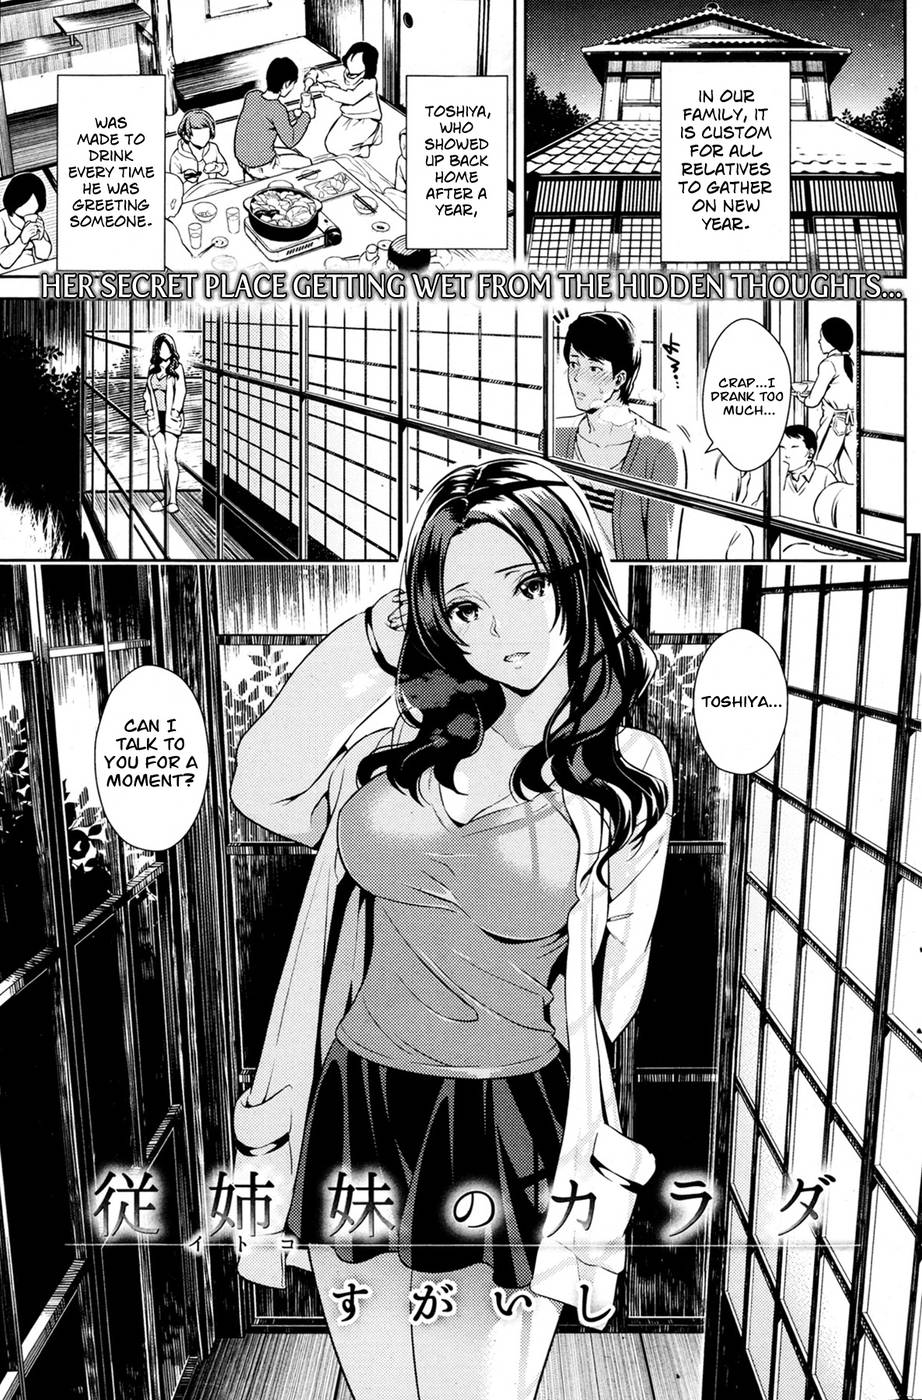 Adult manga reader